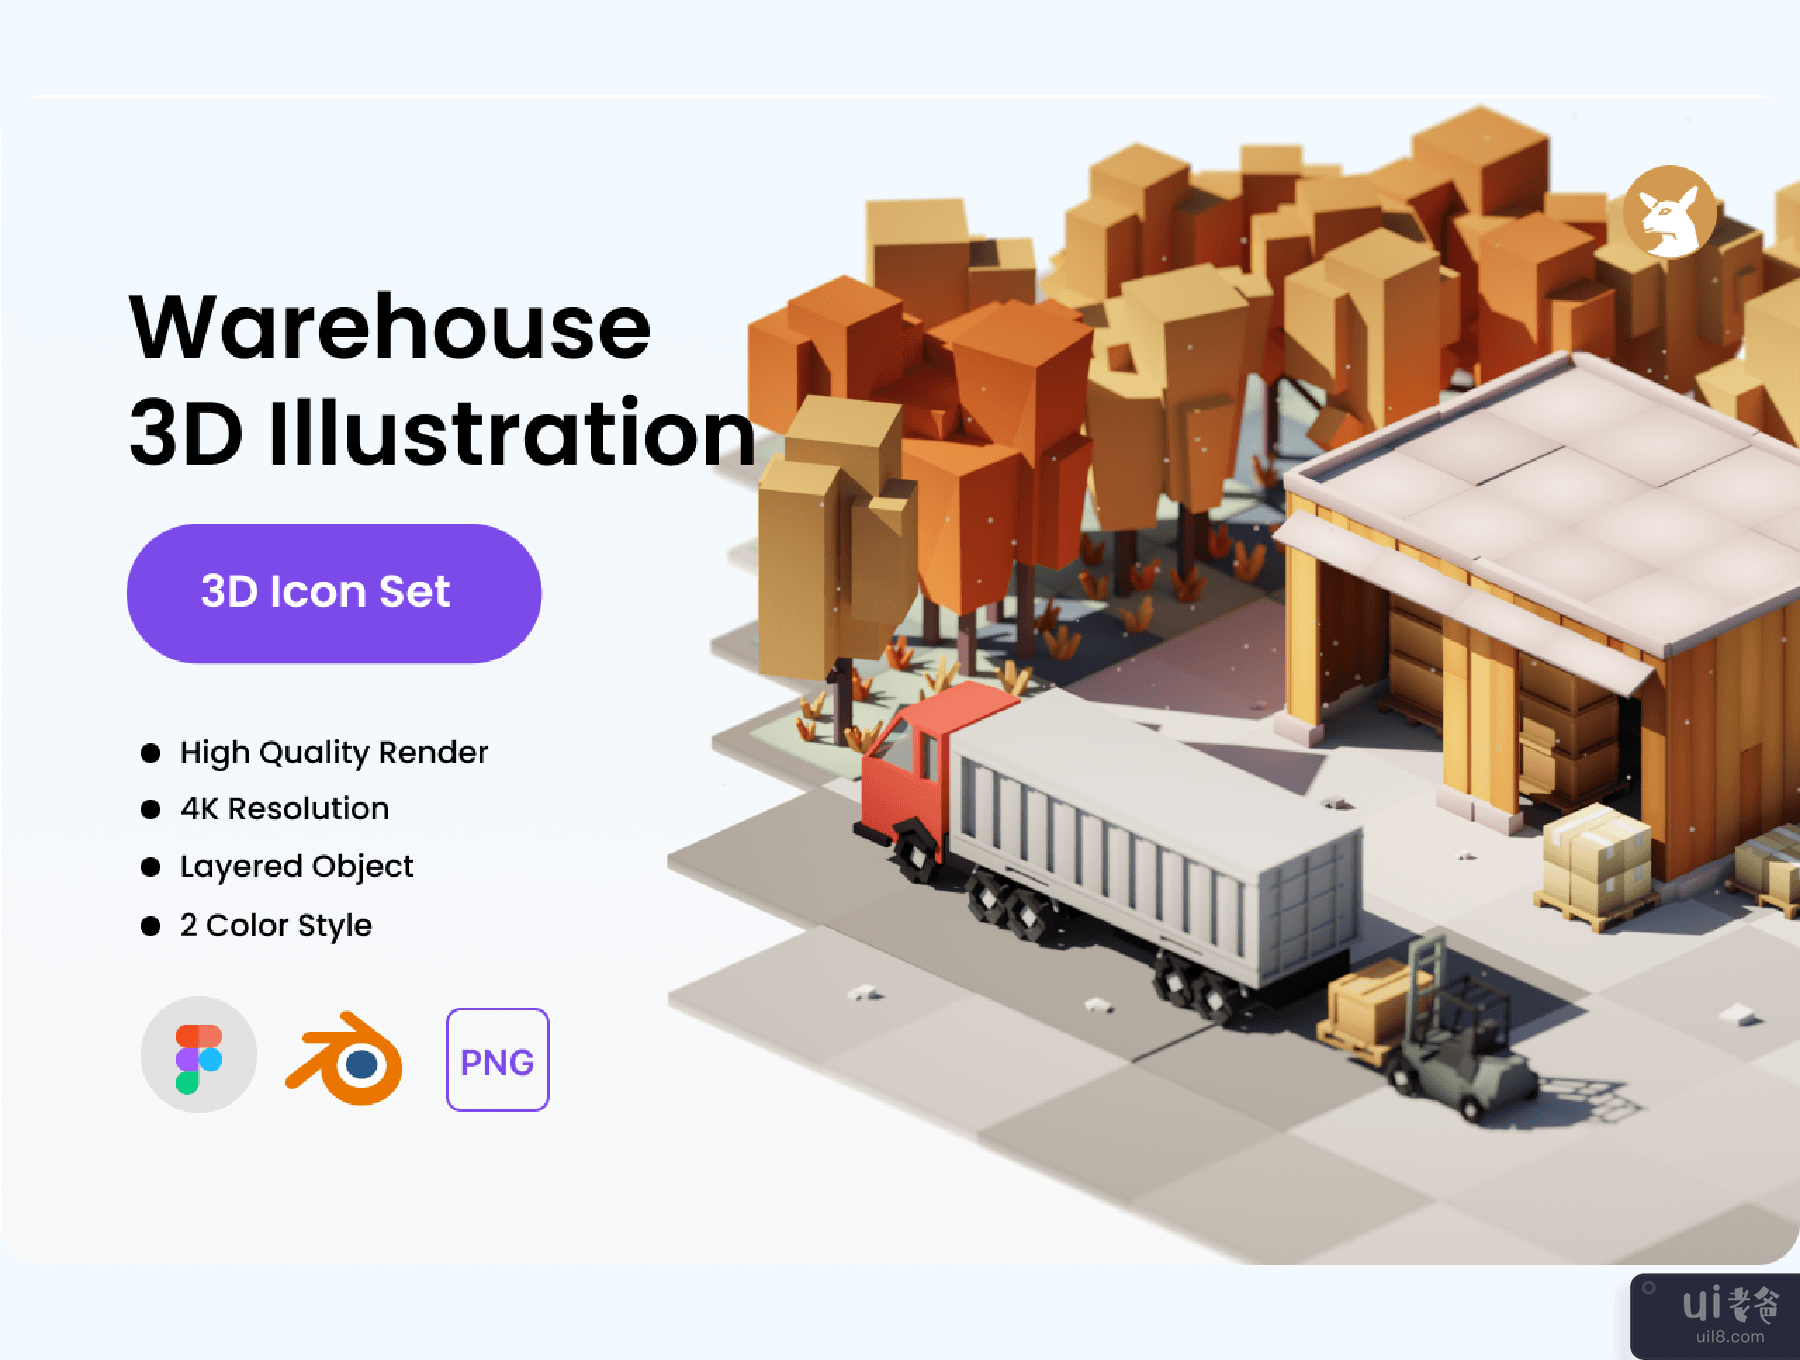 仓库 3D 插画 (Warehouse 3D Illustration)插图5